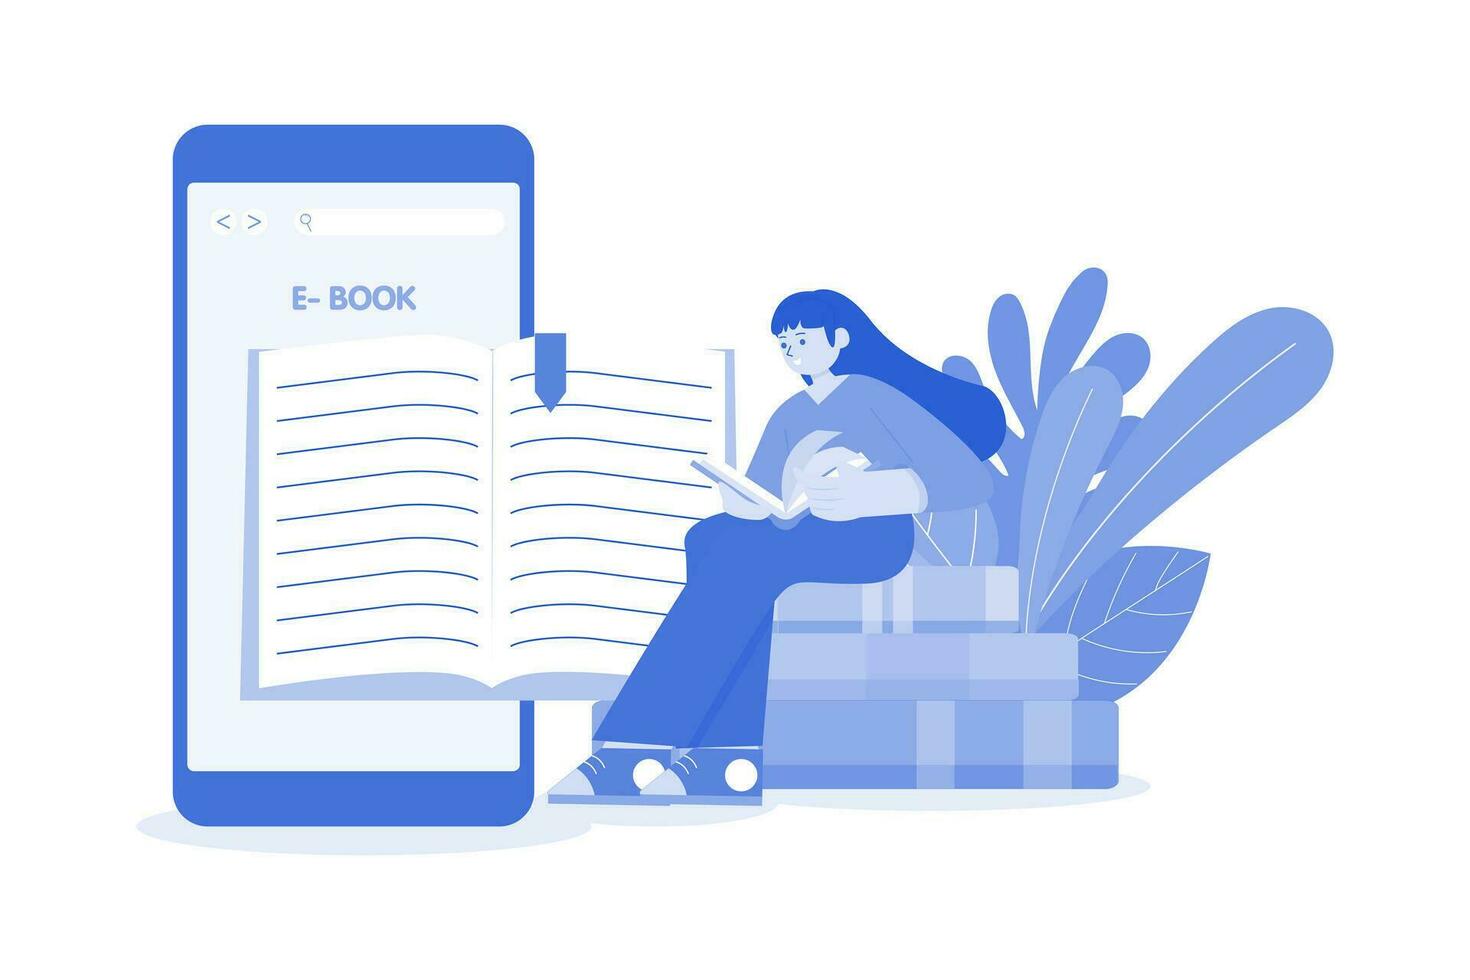 e-book aplicativo ilustração conceito em uma branco fundo vetor